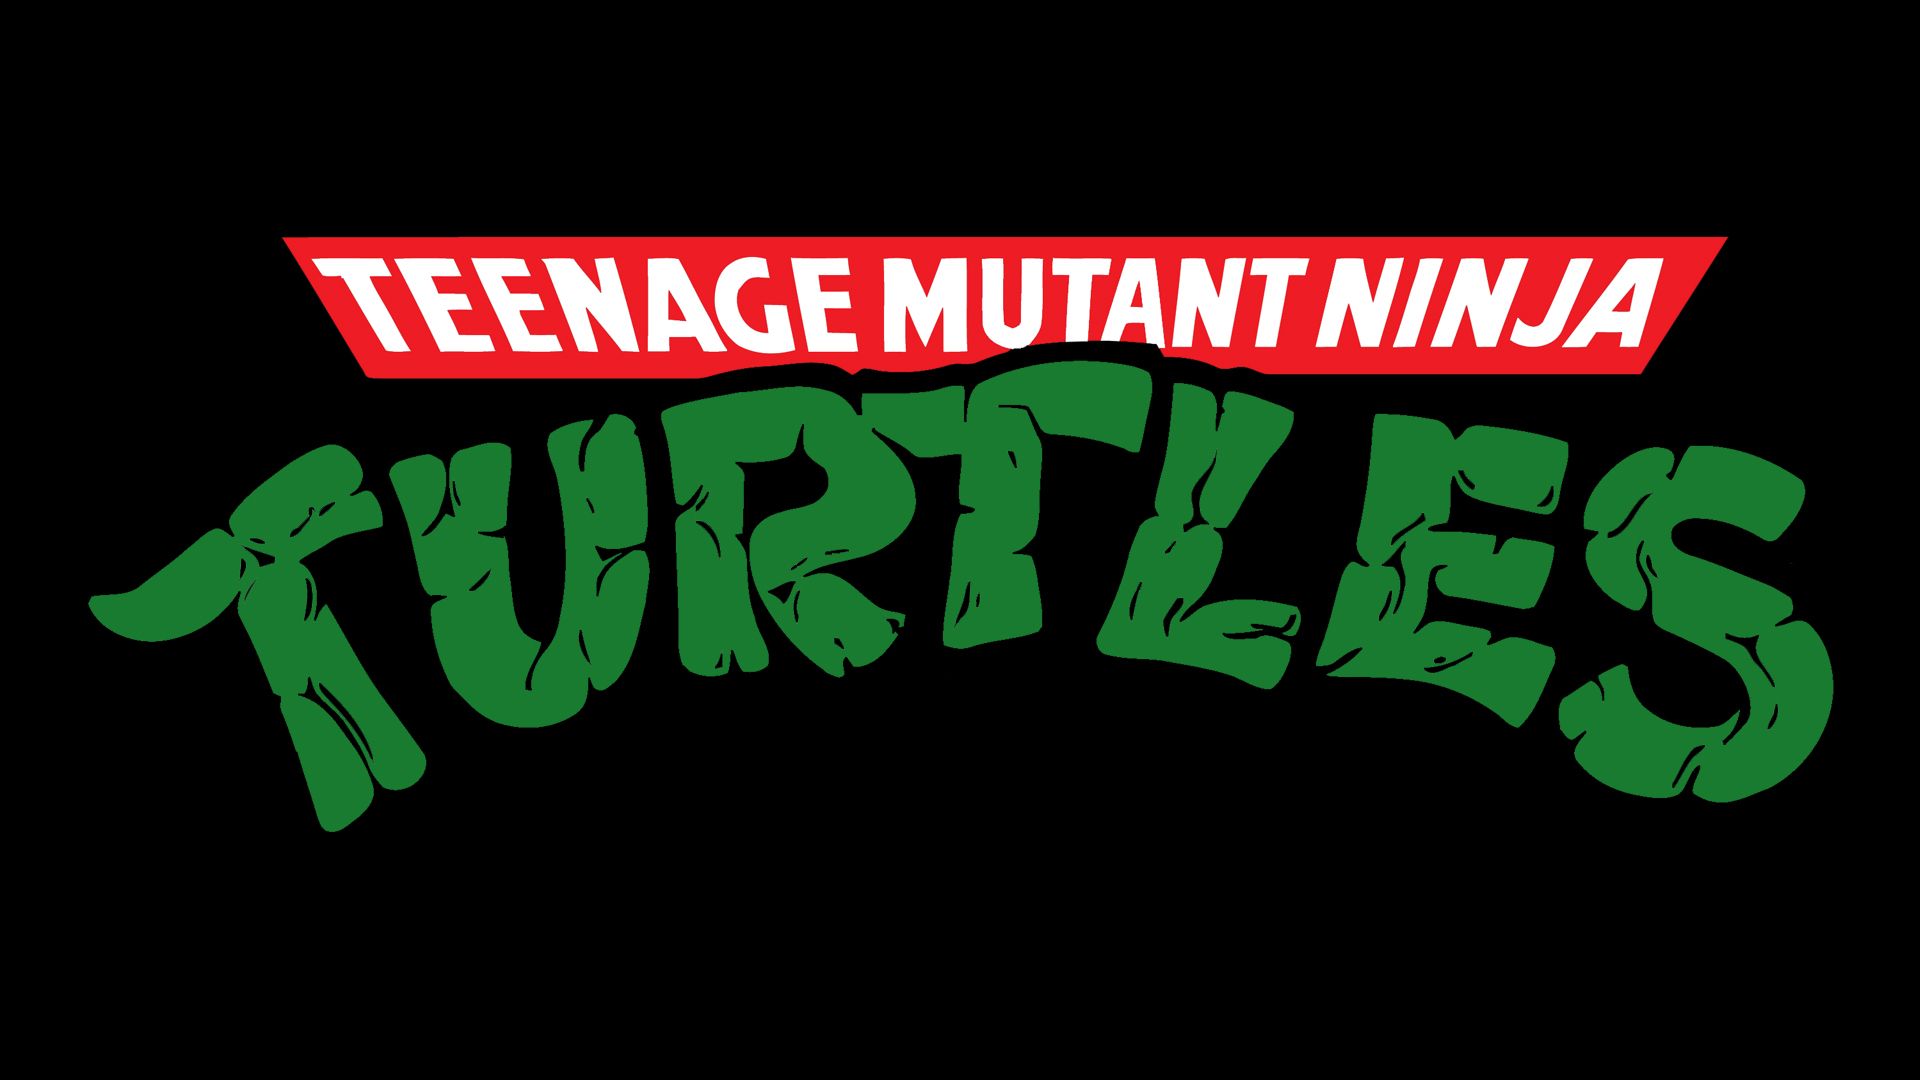 Teenage Mutant Ninja Turtles CG .theculturednerd.org